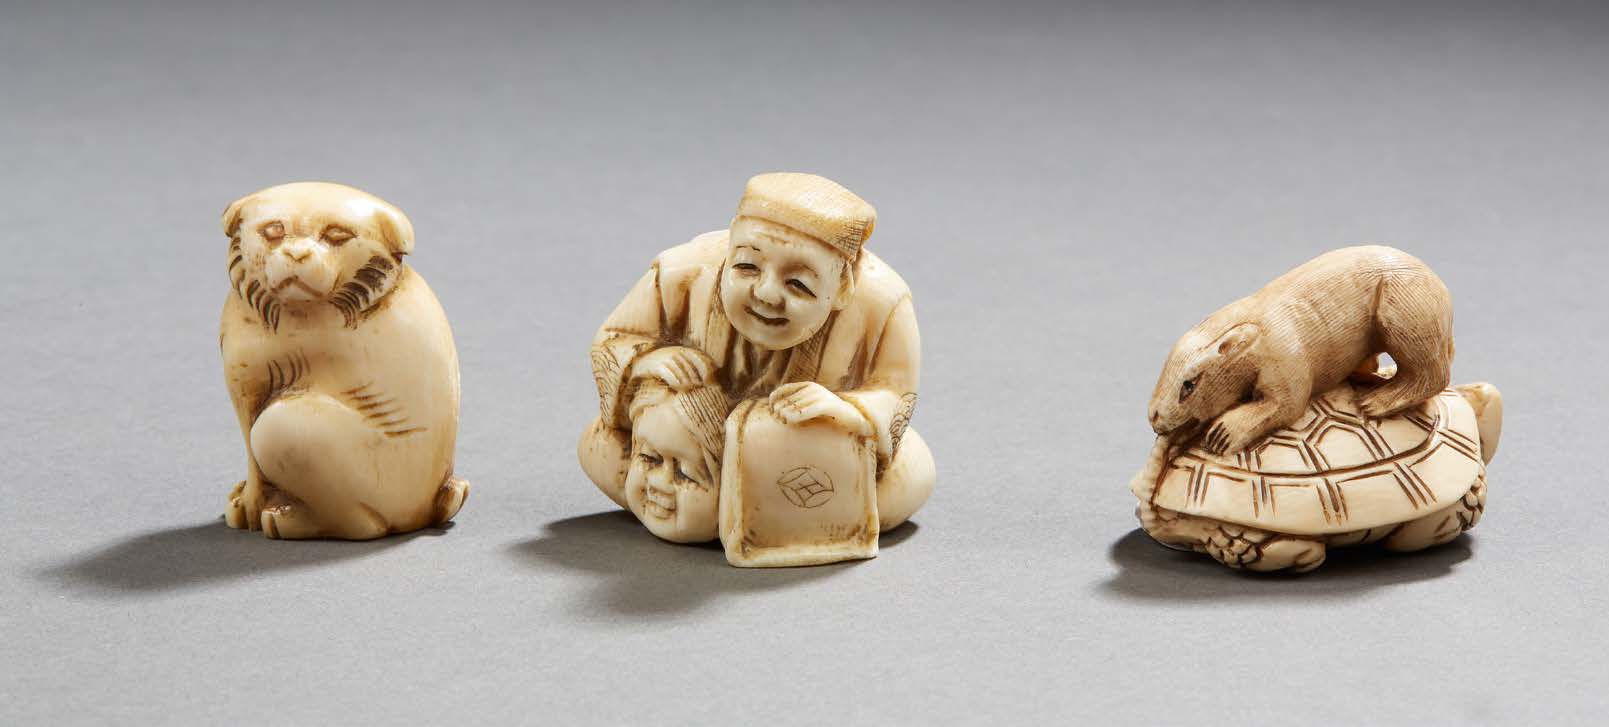 JAPON 三件象牙雕刻网饰，一件表现一只坐着的狗，另一件是一只栖息在乌龟上的老鼠，第三件是一个坐着的人物，手持戏剧面具。其中两个签名
20世纪前三分之一，约1&hellip;